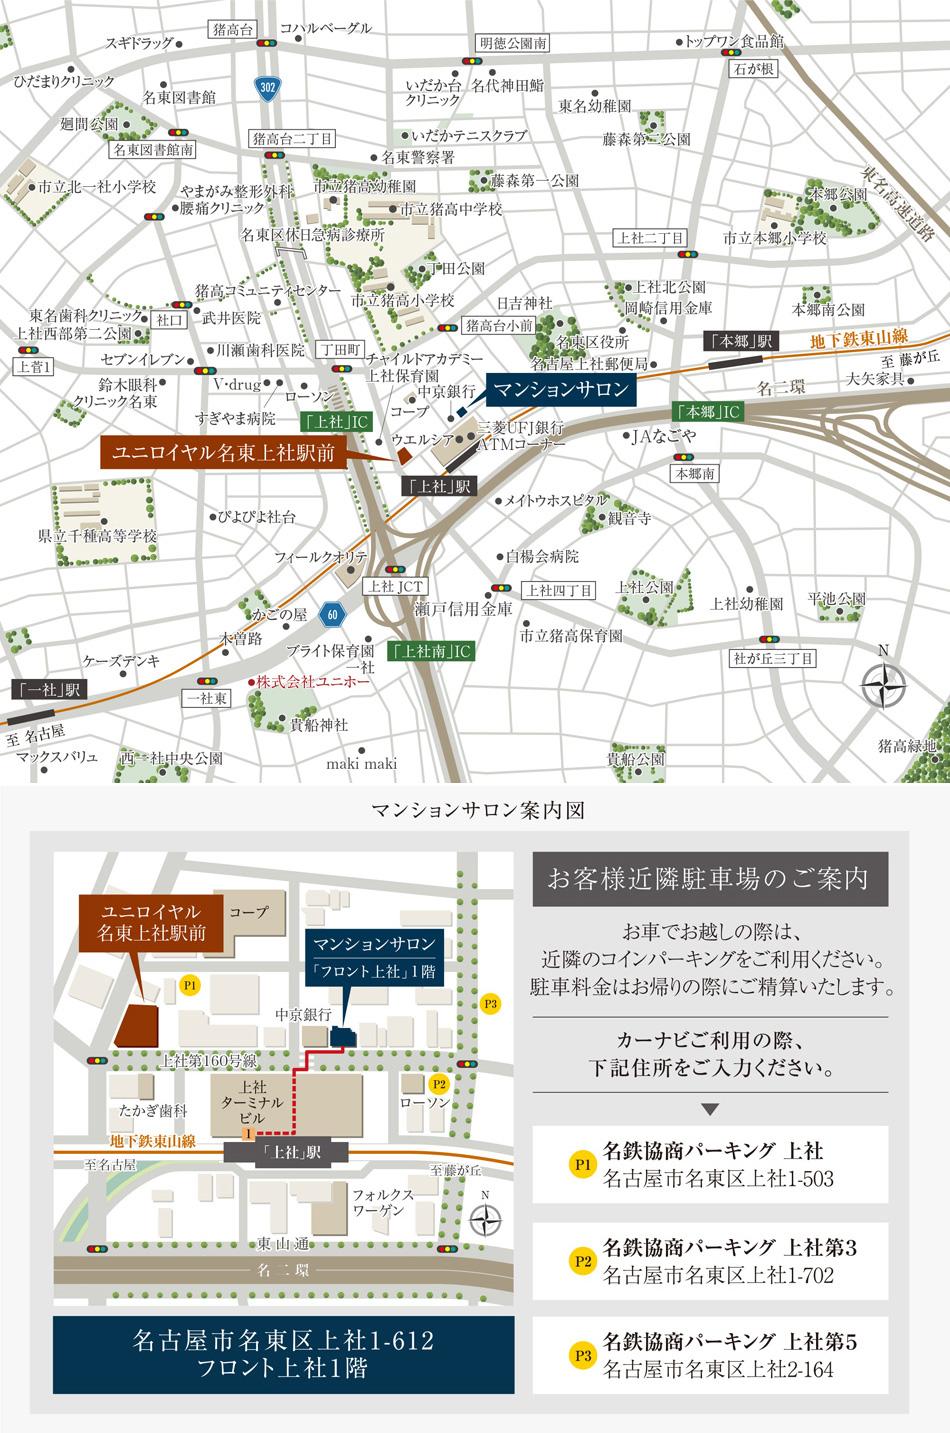 ユニロイヤル名東上社駅前のモデルルーム案内図